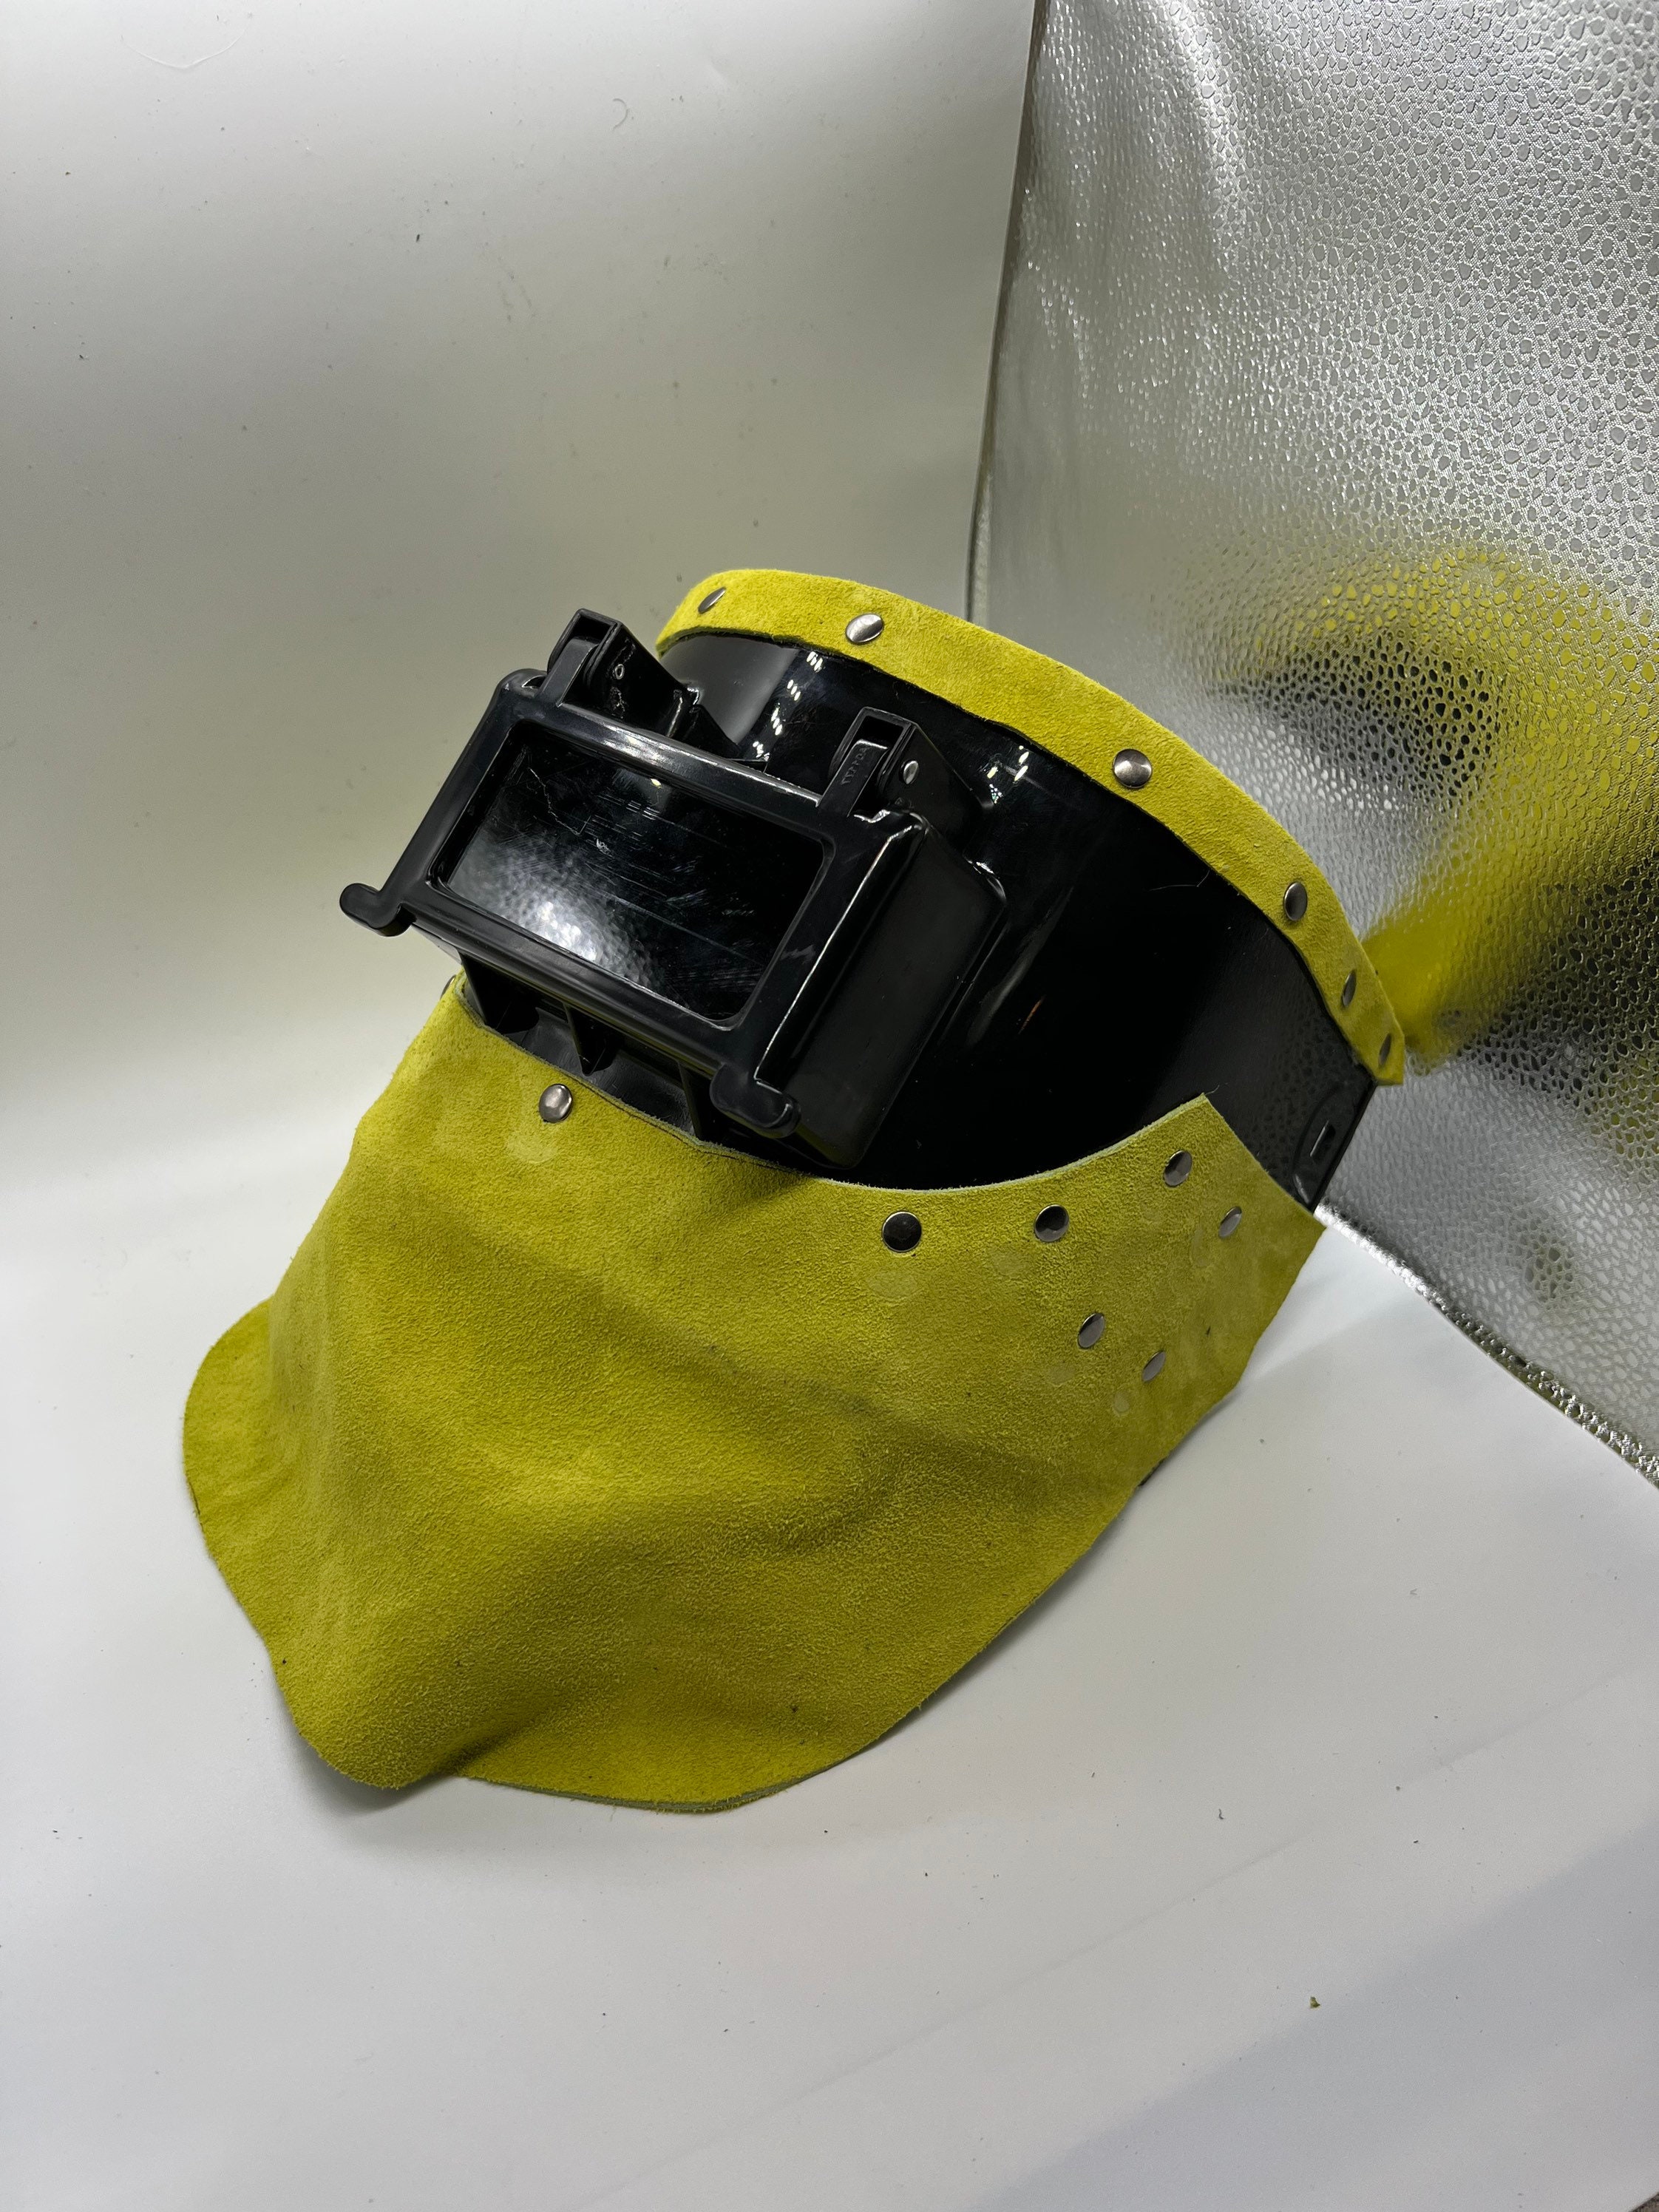 From purse to welding hood #welder #weldingstore #weldinghood #soldado, welding